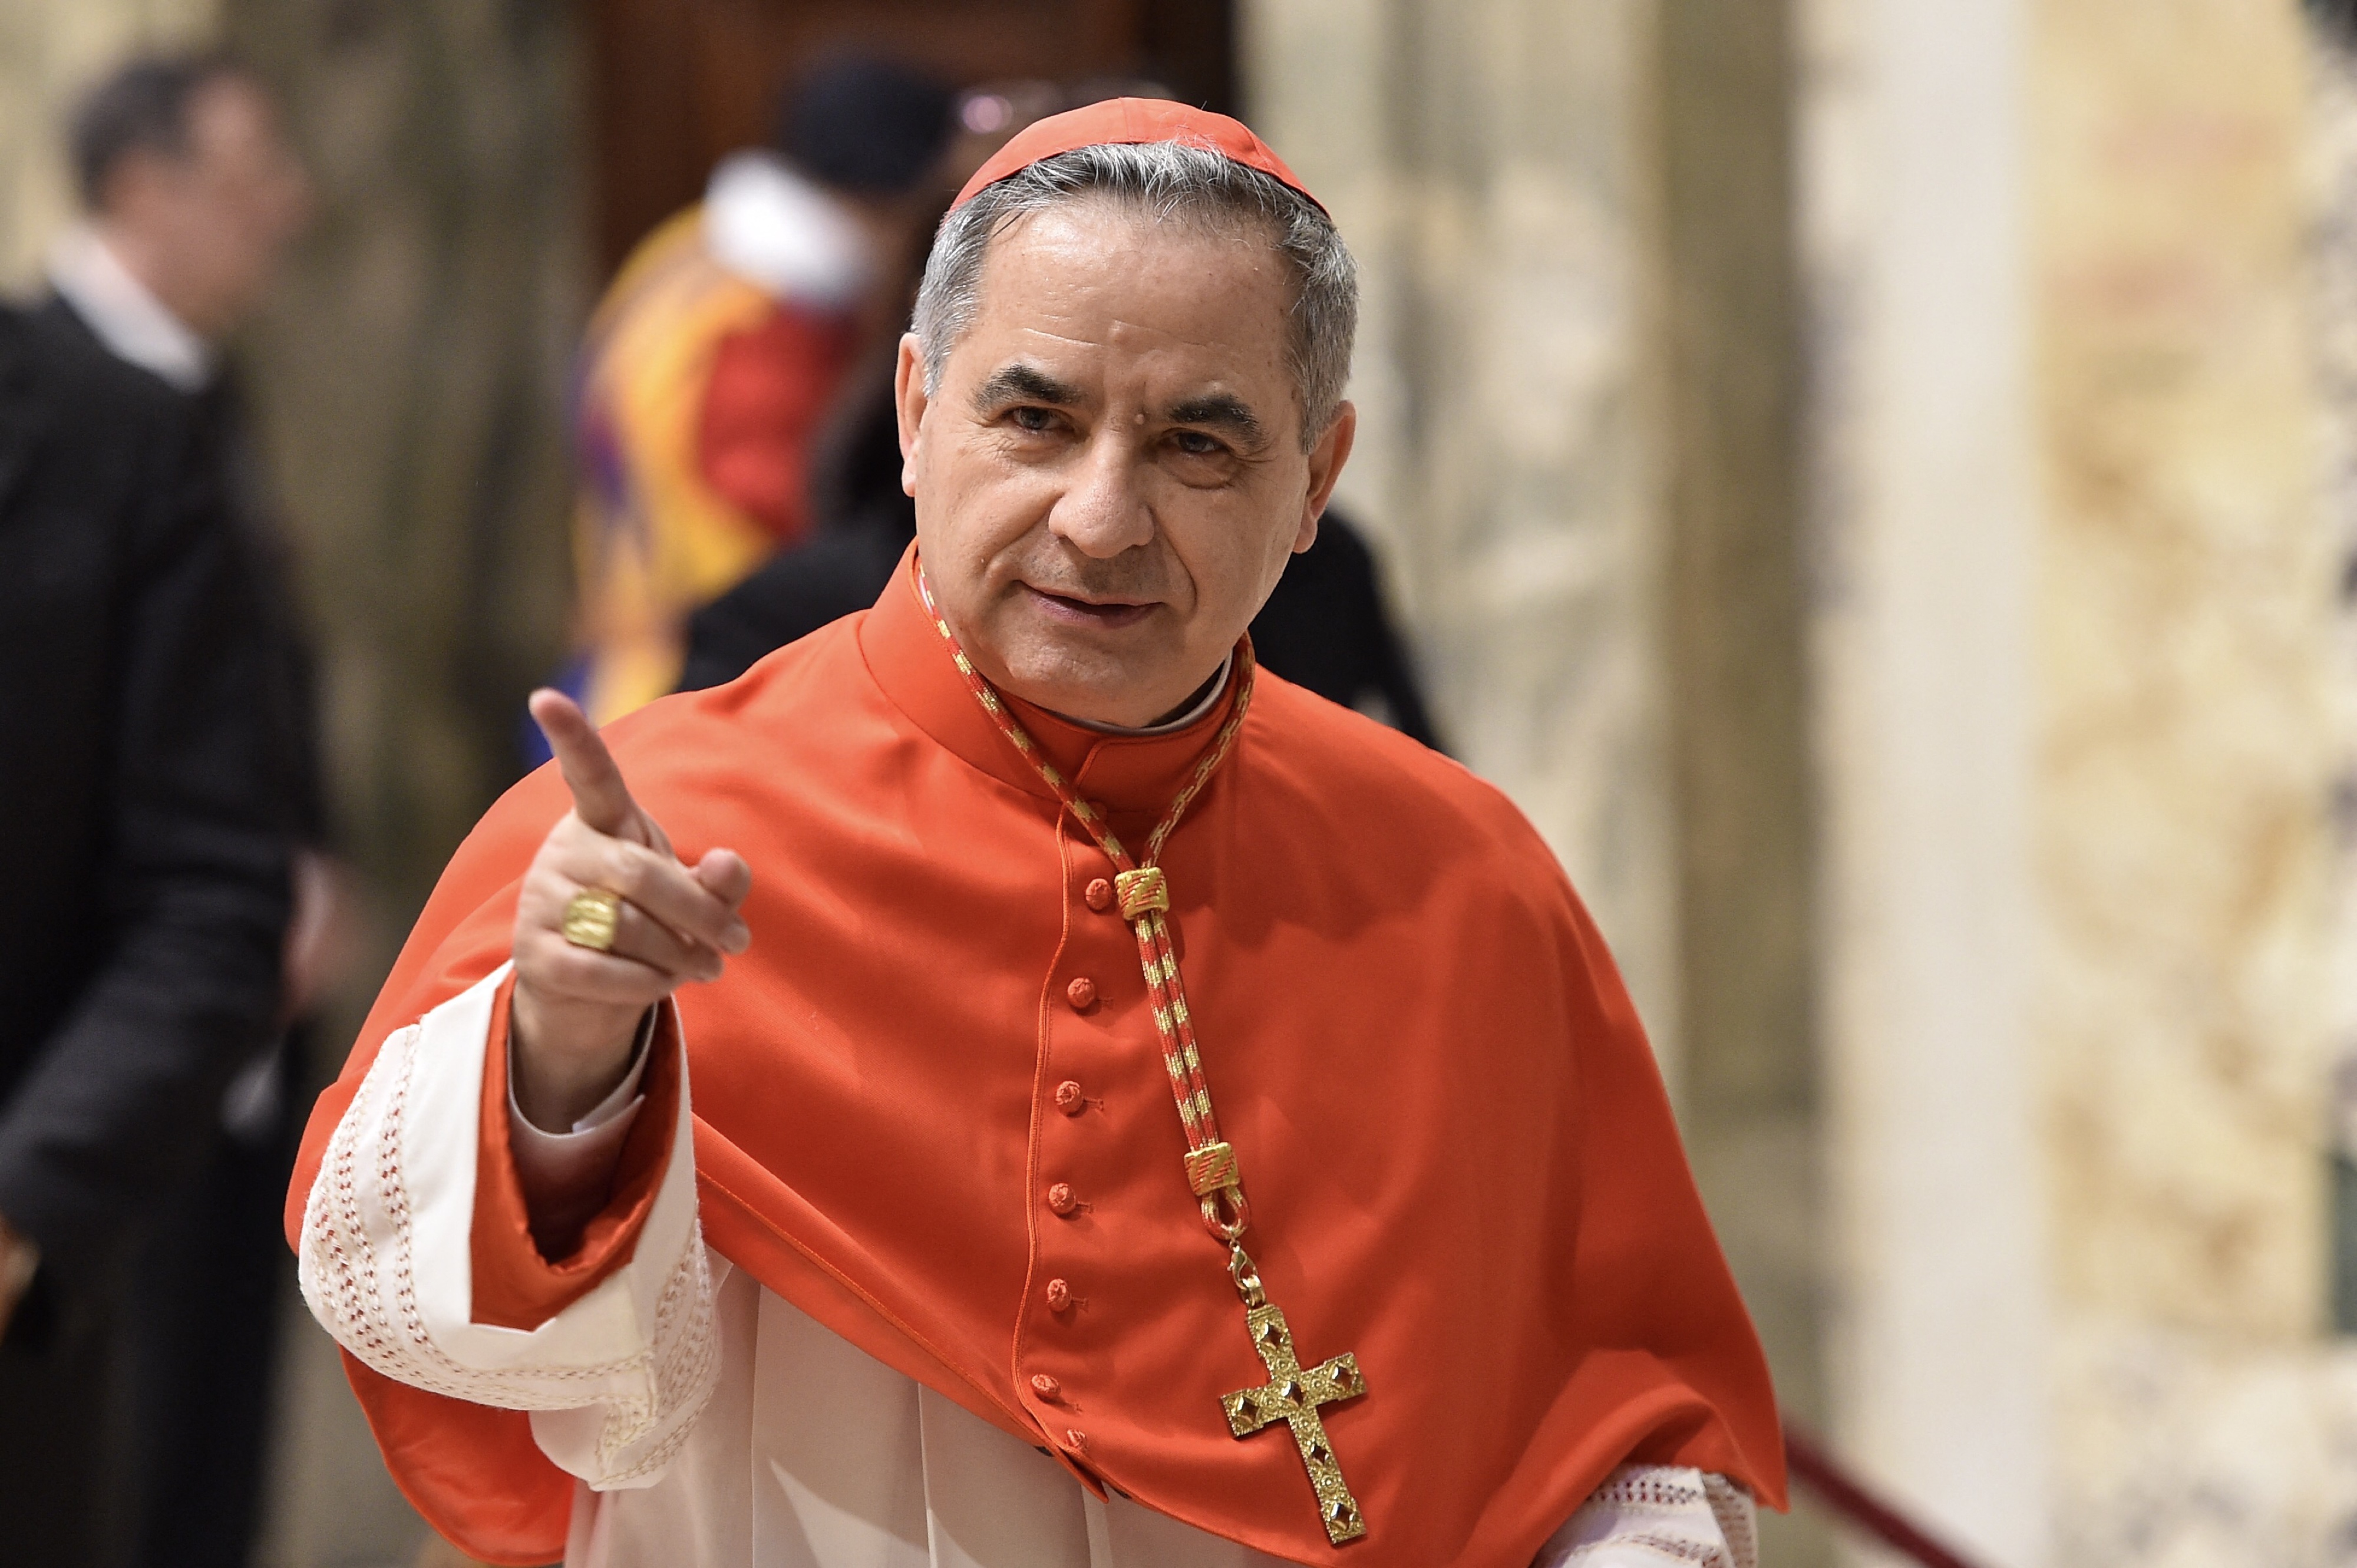 Vaticano pidió devolución de 700 millones de euros malversados en un caso que involucra a poderoso cardenal